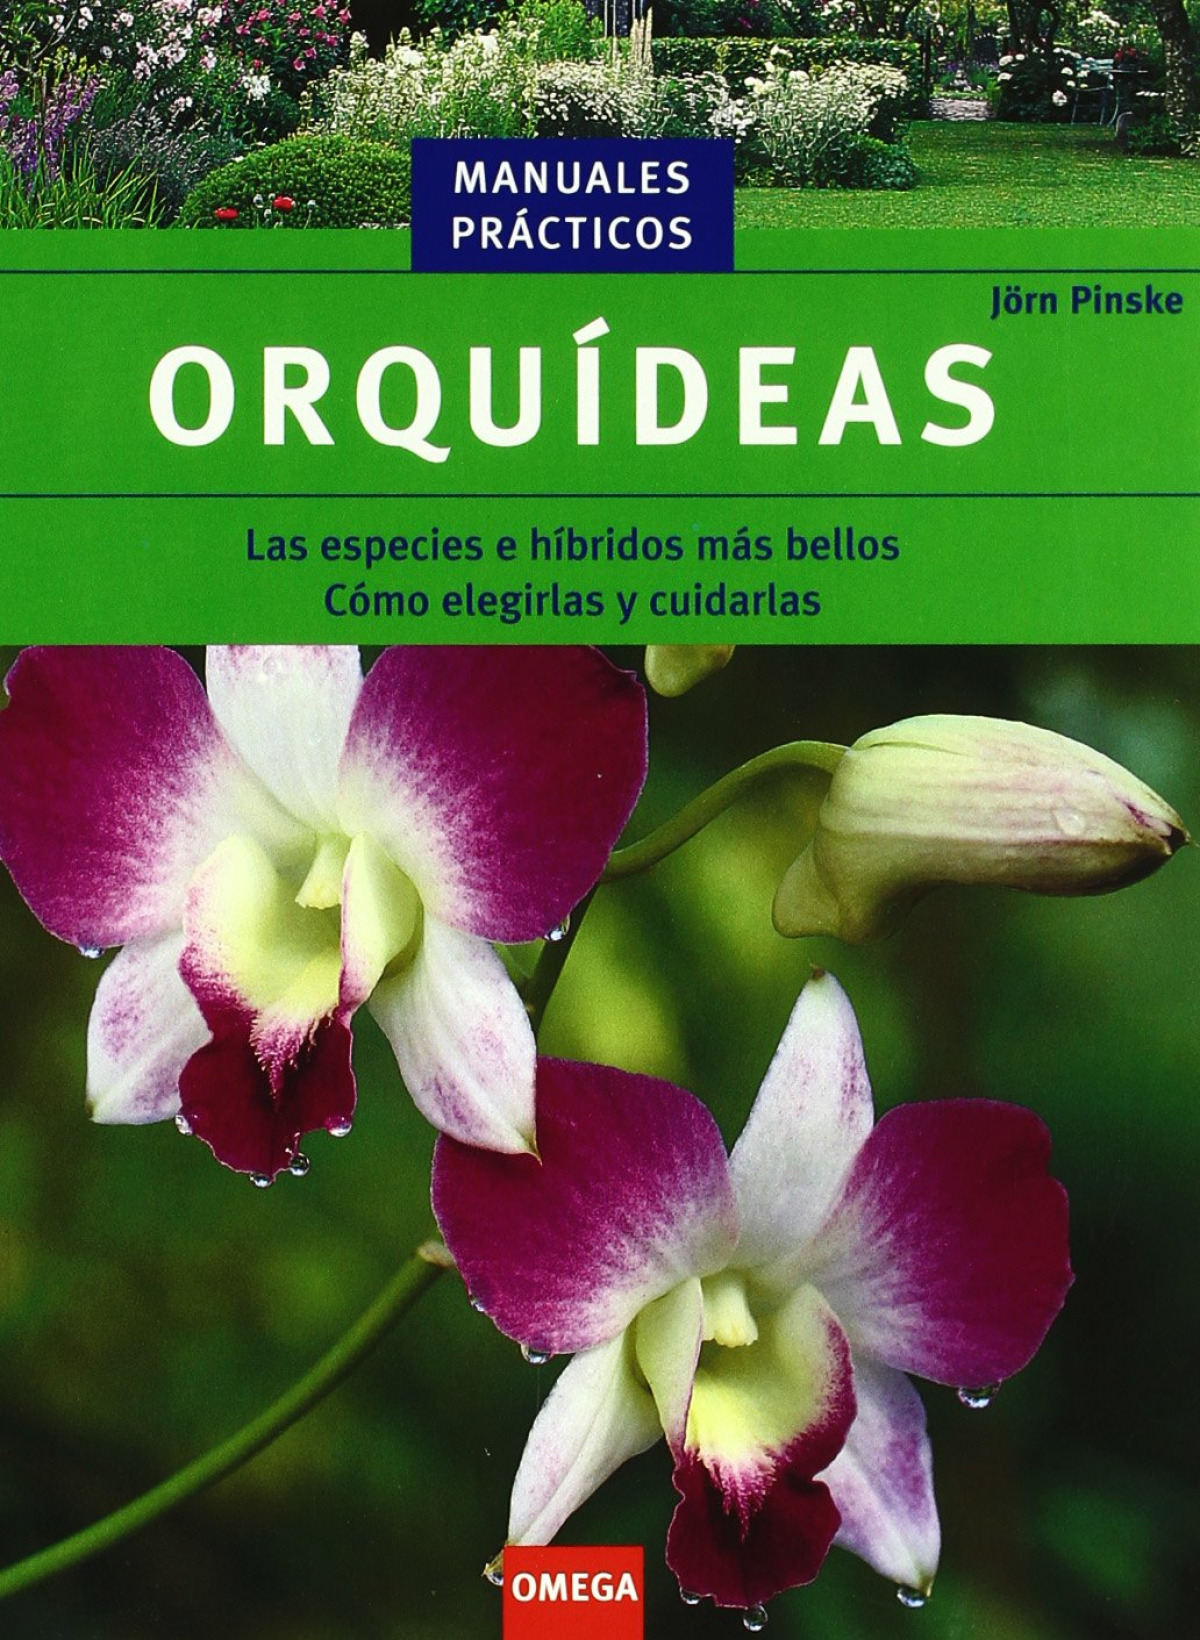 Orquídeas Las especies de híbridos más bellos. Cómo elegirlas y cuidar - Pinske, Jorn